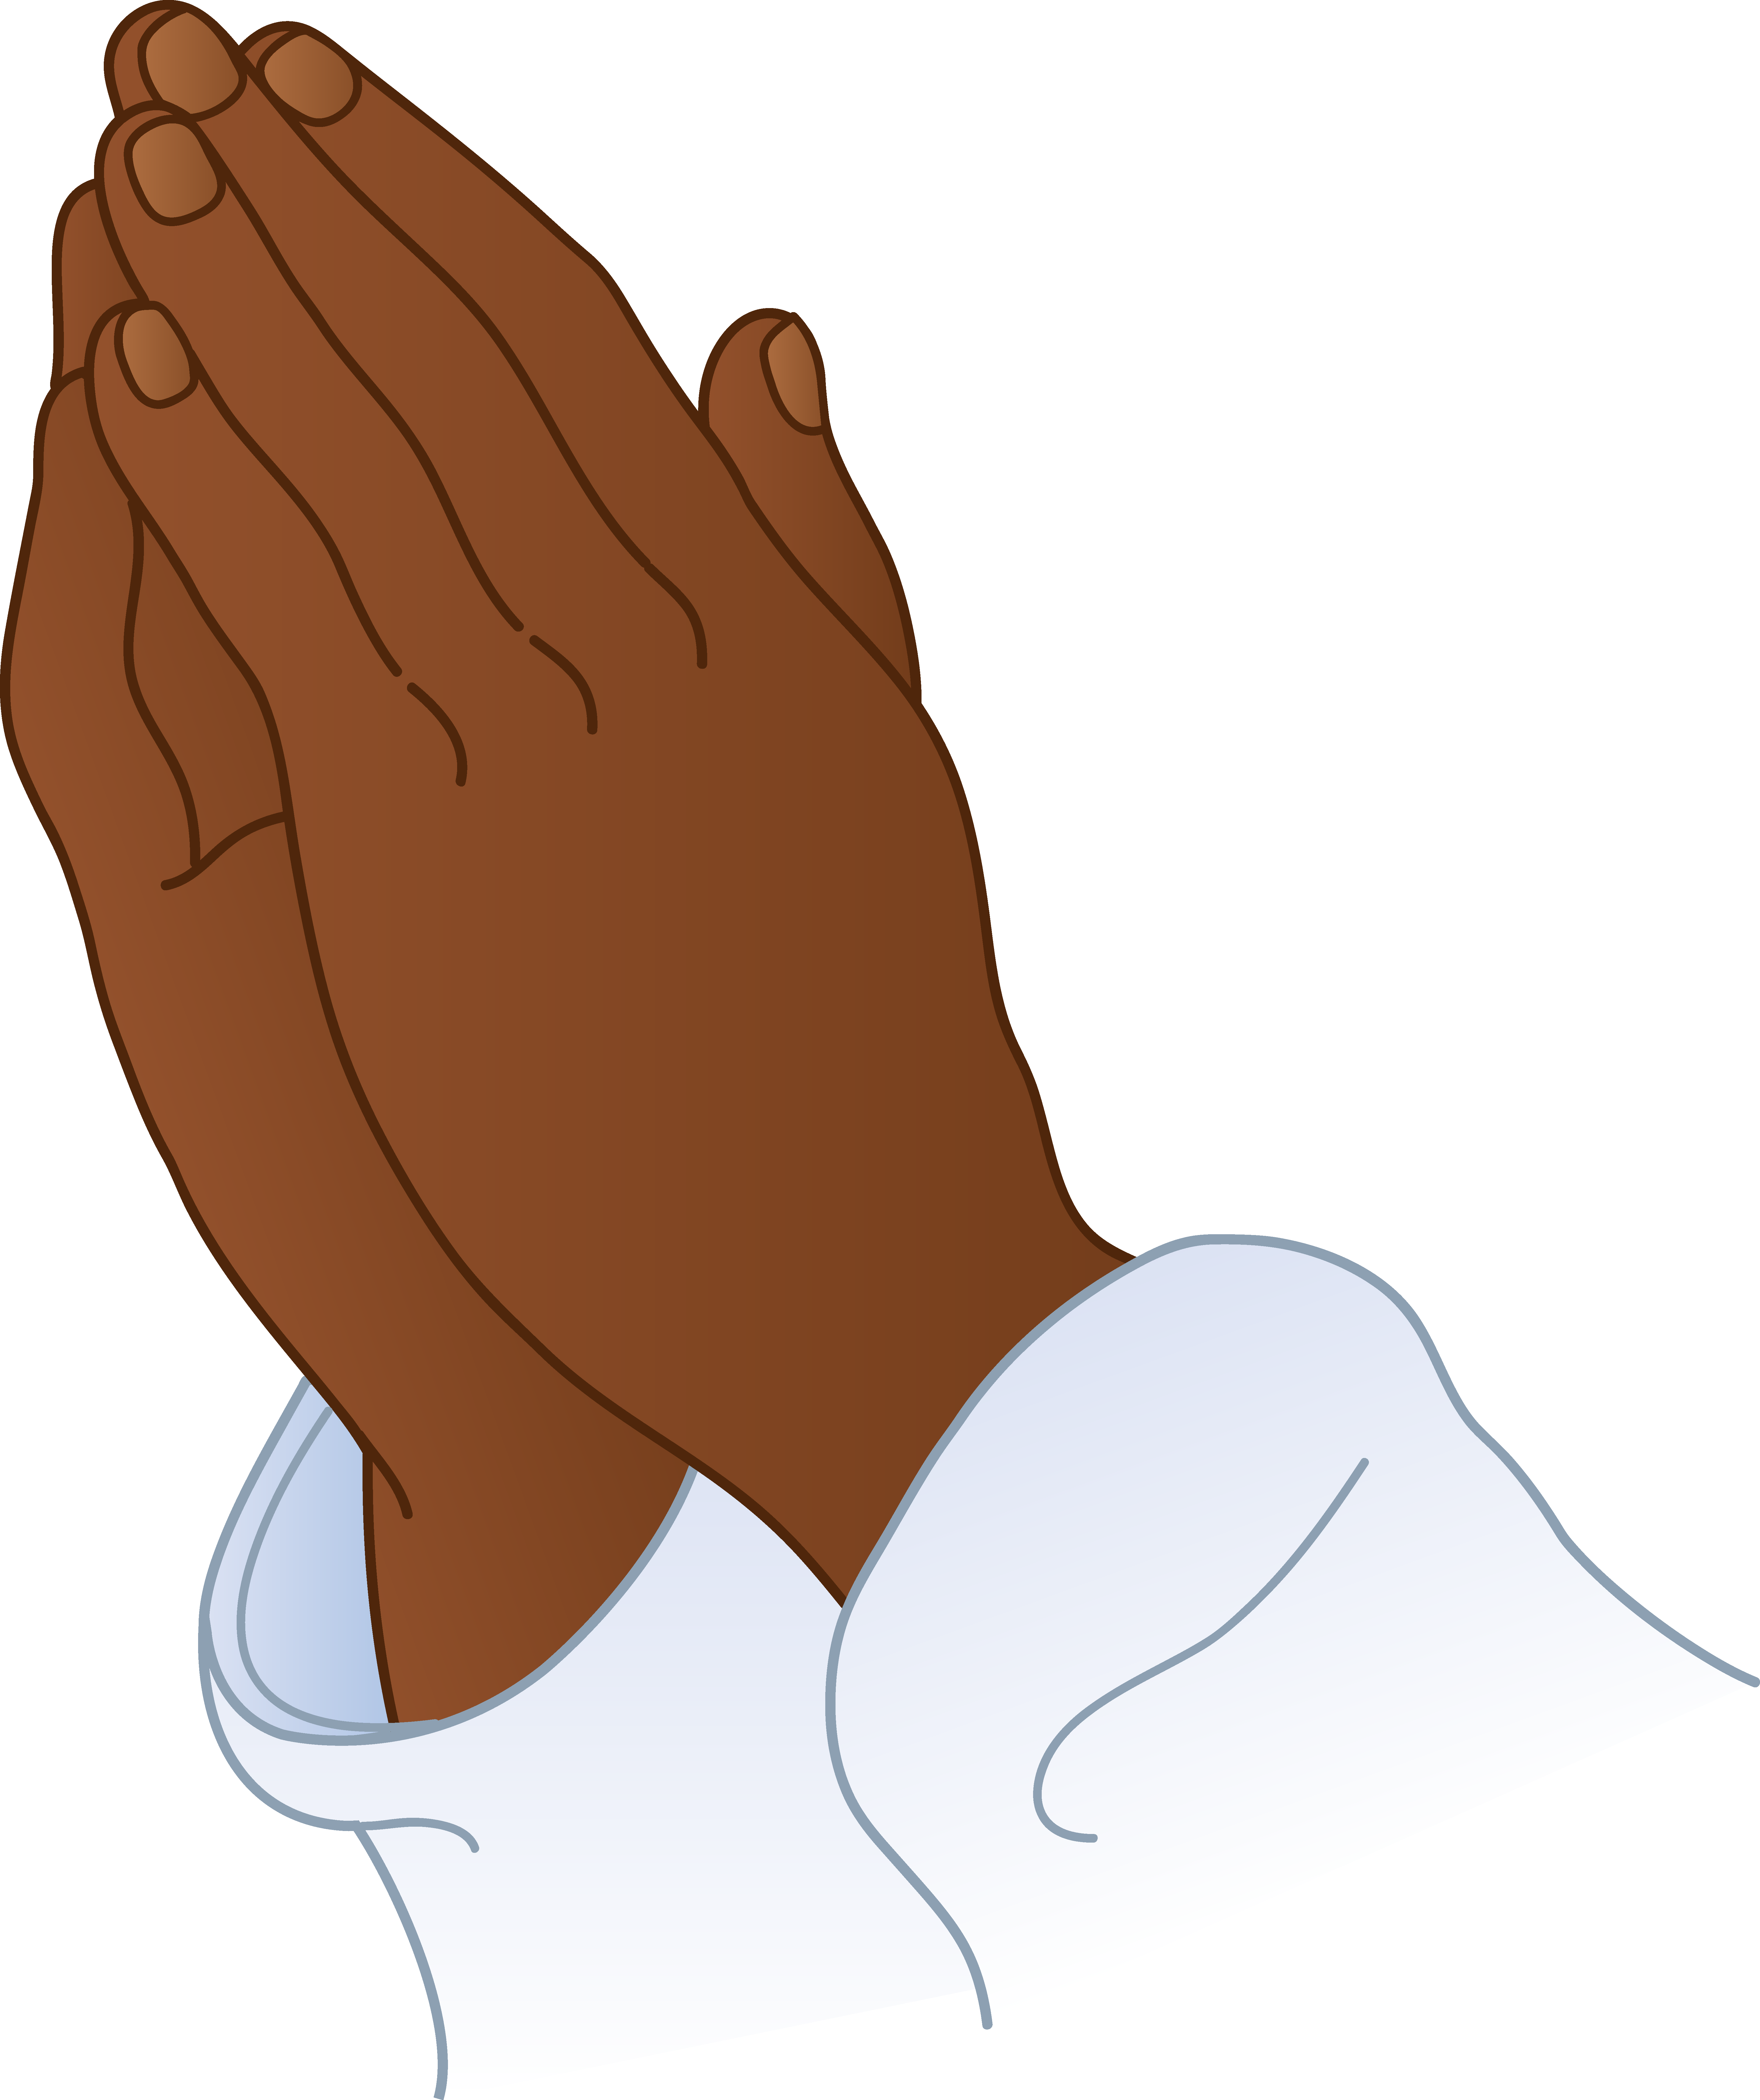 free-praying-hands-transparent-background-download-free-praying-hands